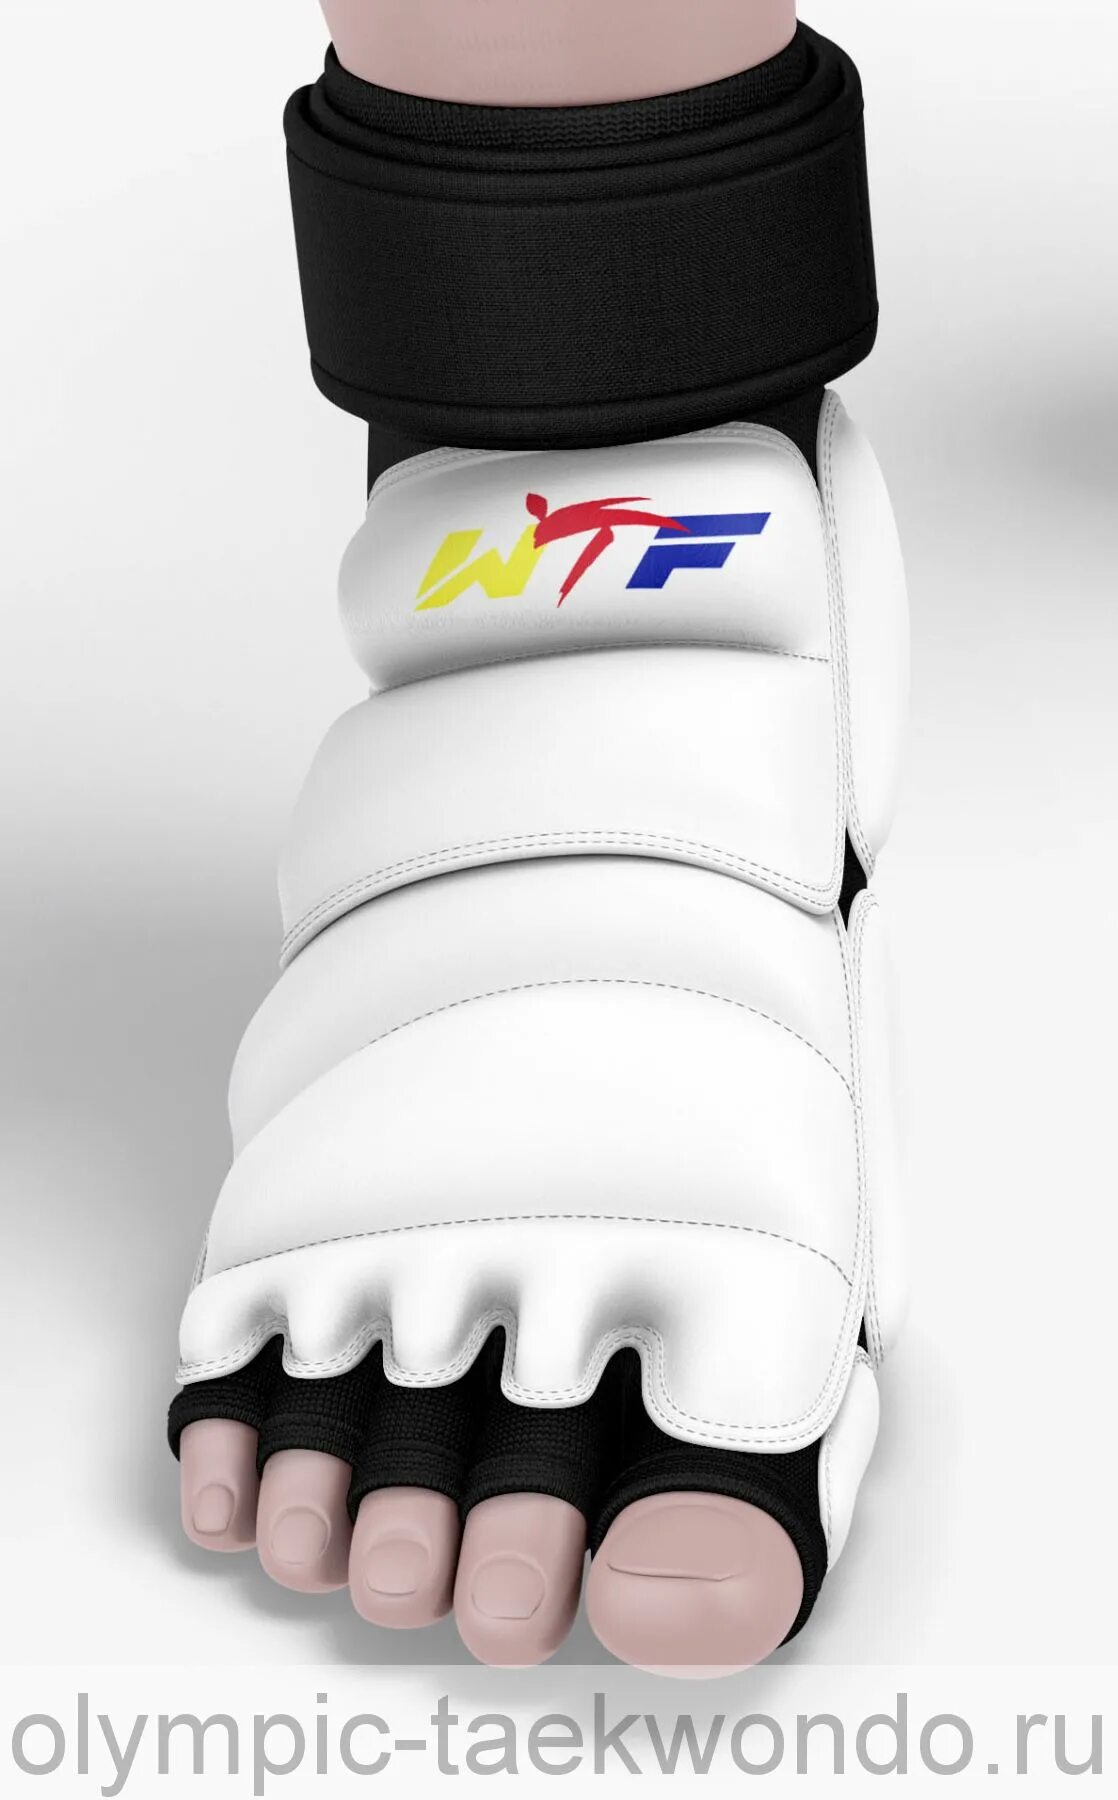 Защита стопы для тхэквондо ВТФ. Защита стопы для тхэквондо WTF. Защита подъема стопы для тхэквондо adidas. Викинг тхэквондо.